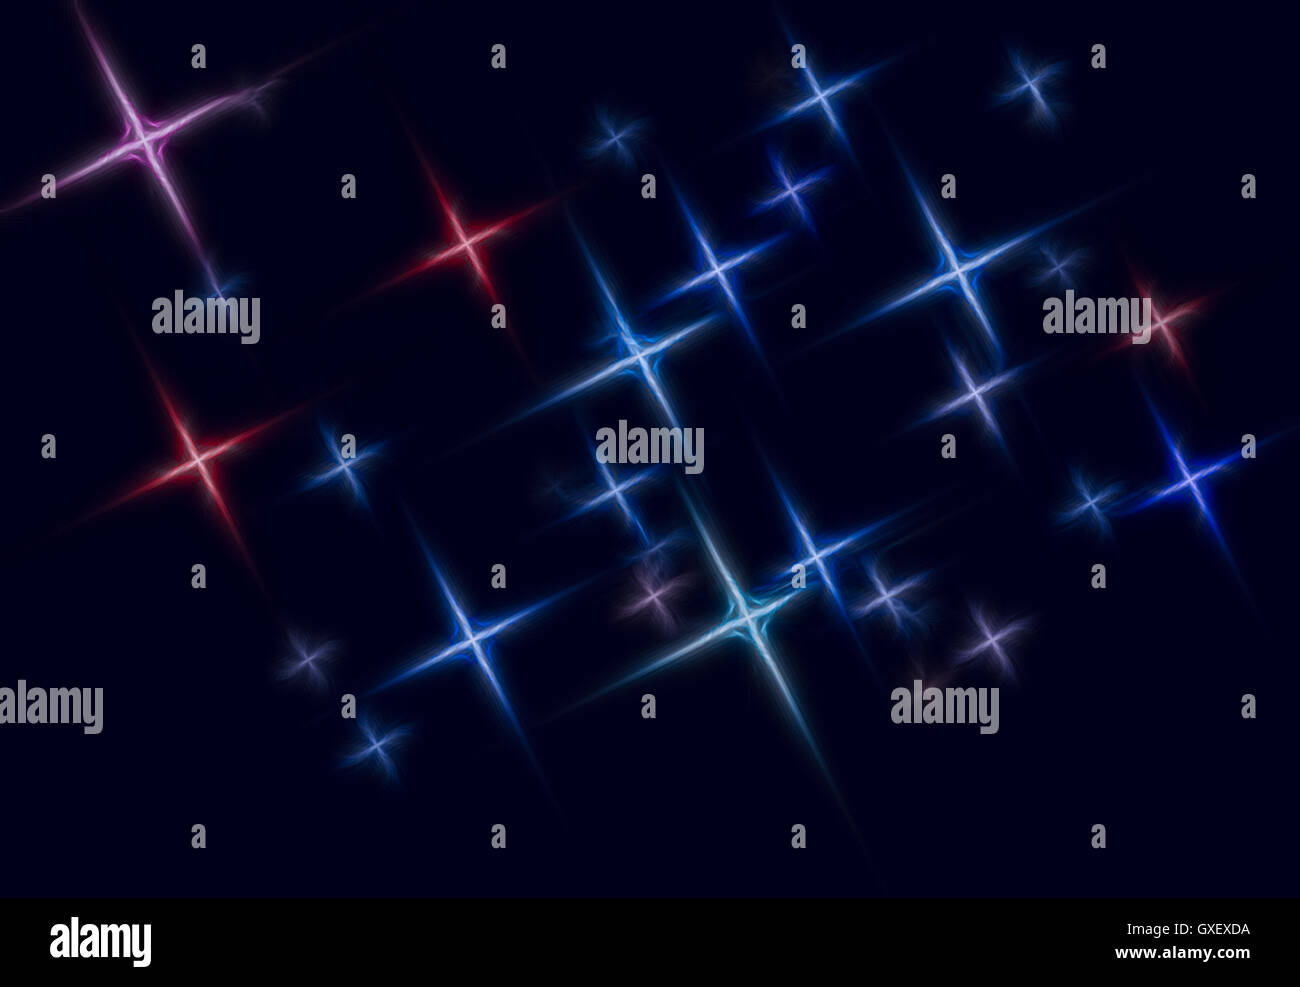 L'espace abstrait toile étoilée illustration composée d'étoiles stylisées qui forment un motif sur fond sombre. Banque D'Images